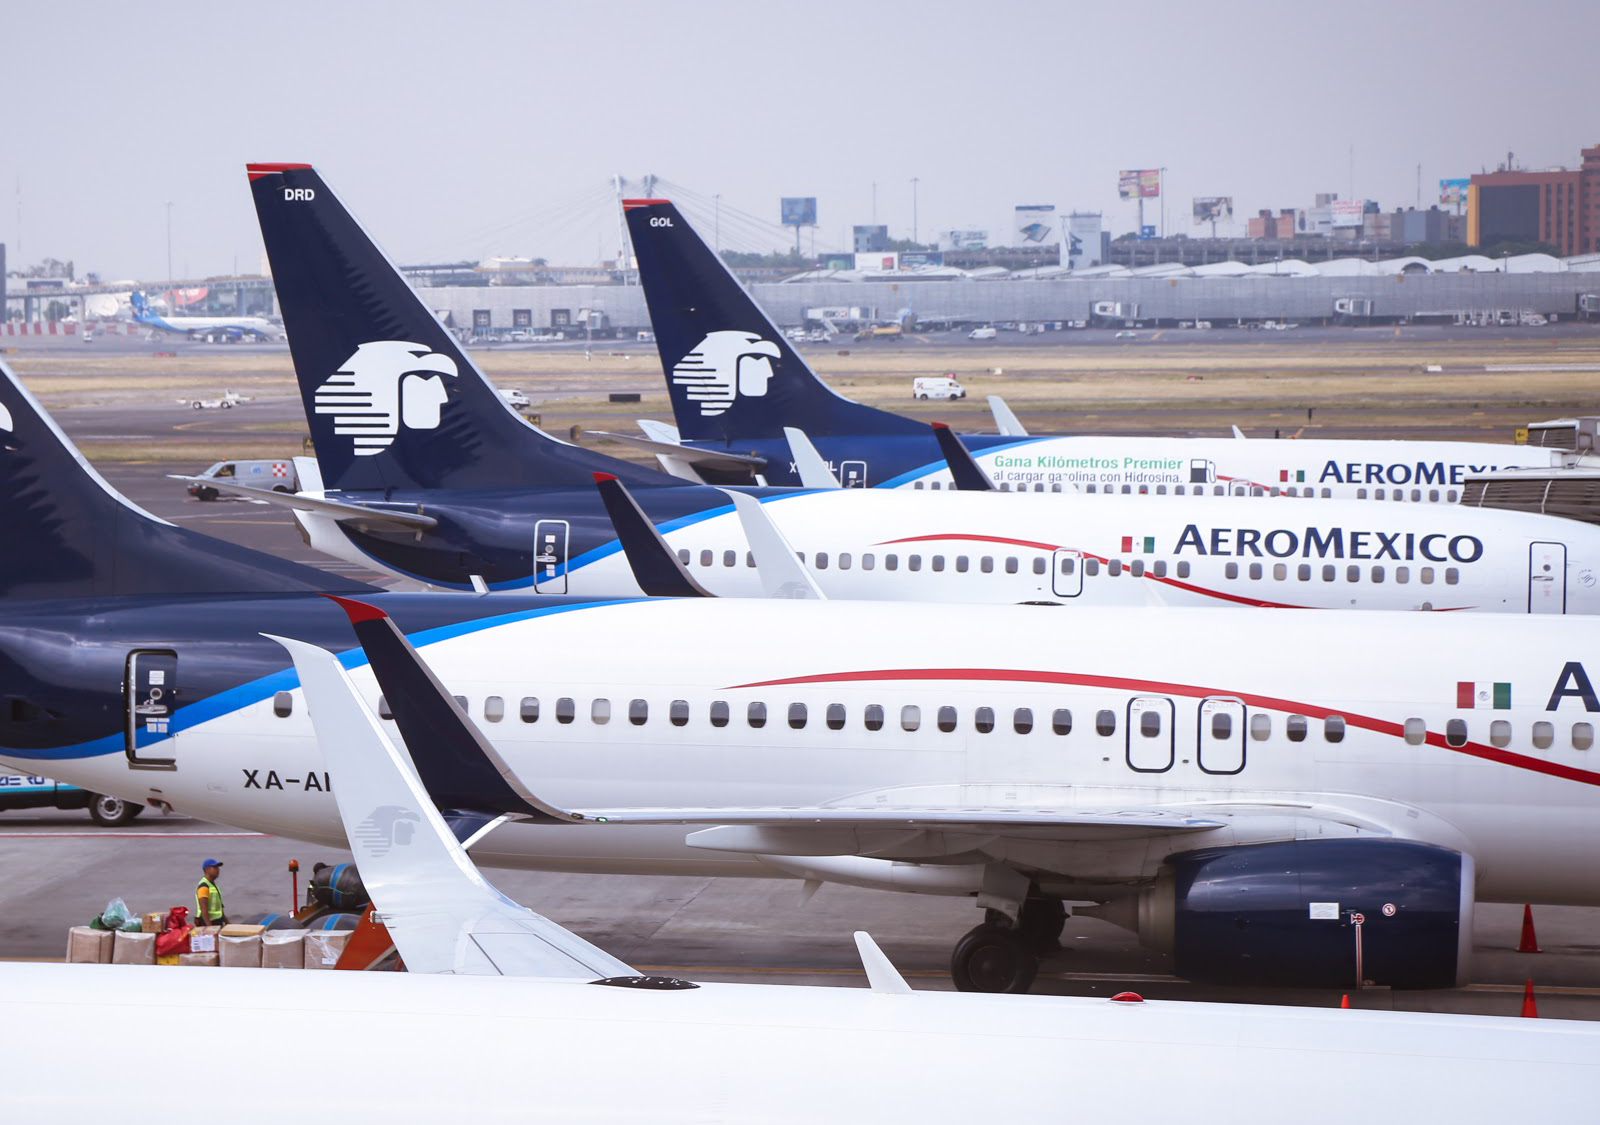 I-T- Análisis- Aeroméxico suspende vuelos a Ecuador por conflicto diplomático